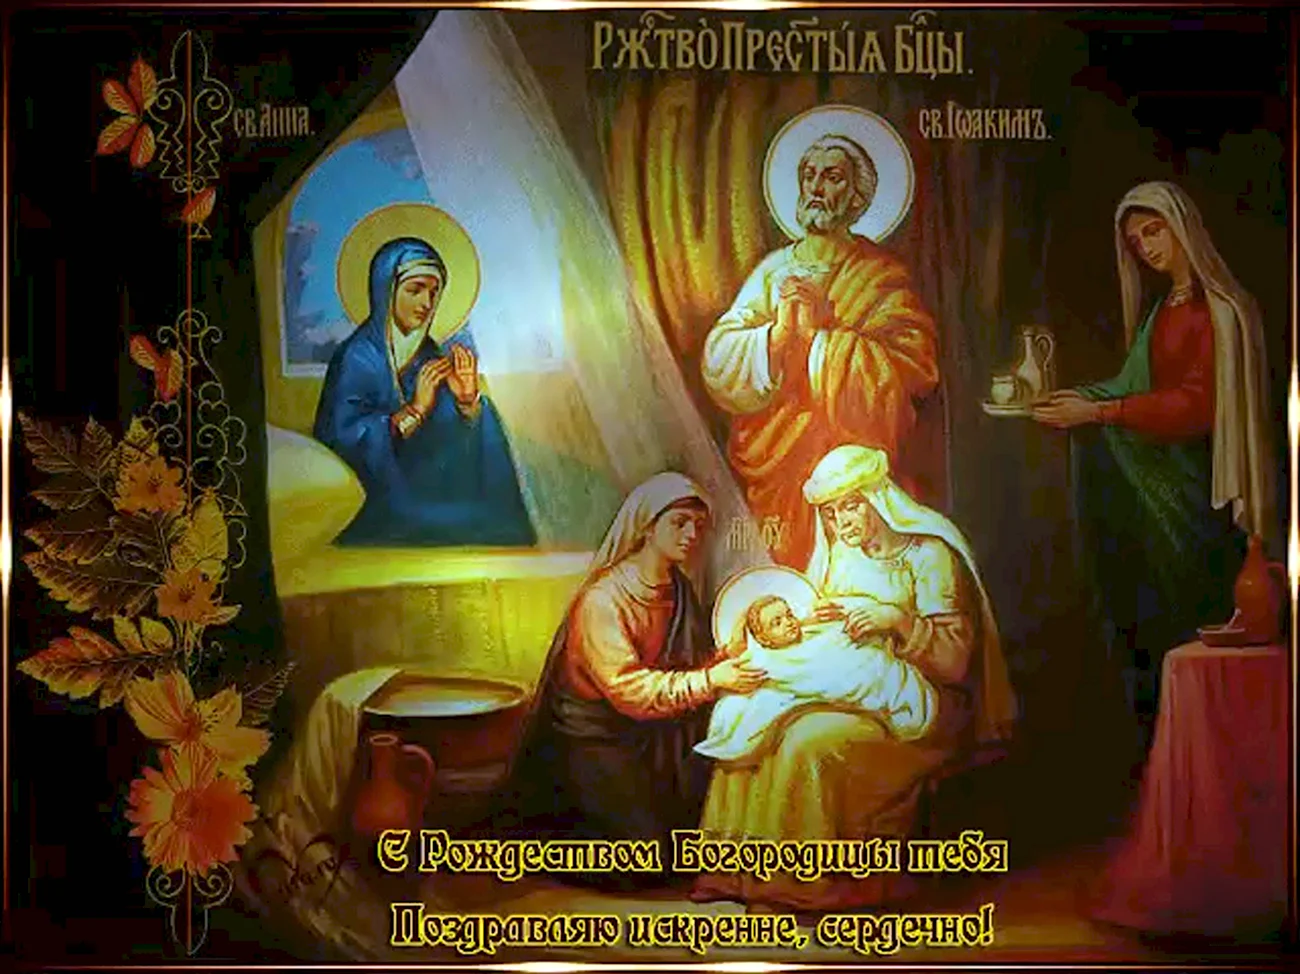 Рождество Пресвятой Богородицы православный праздник. Поздравление